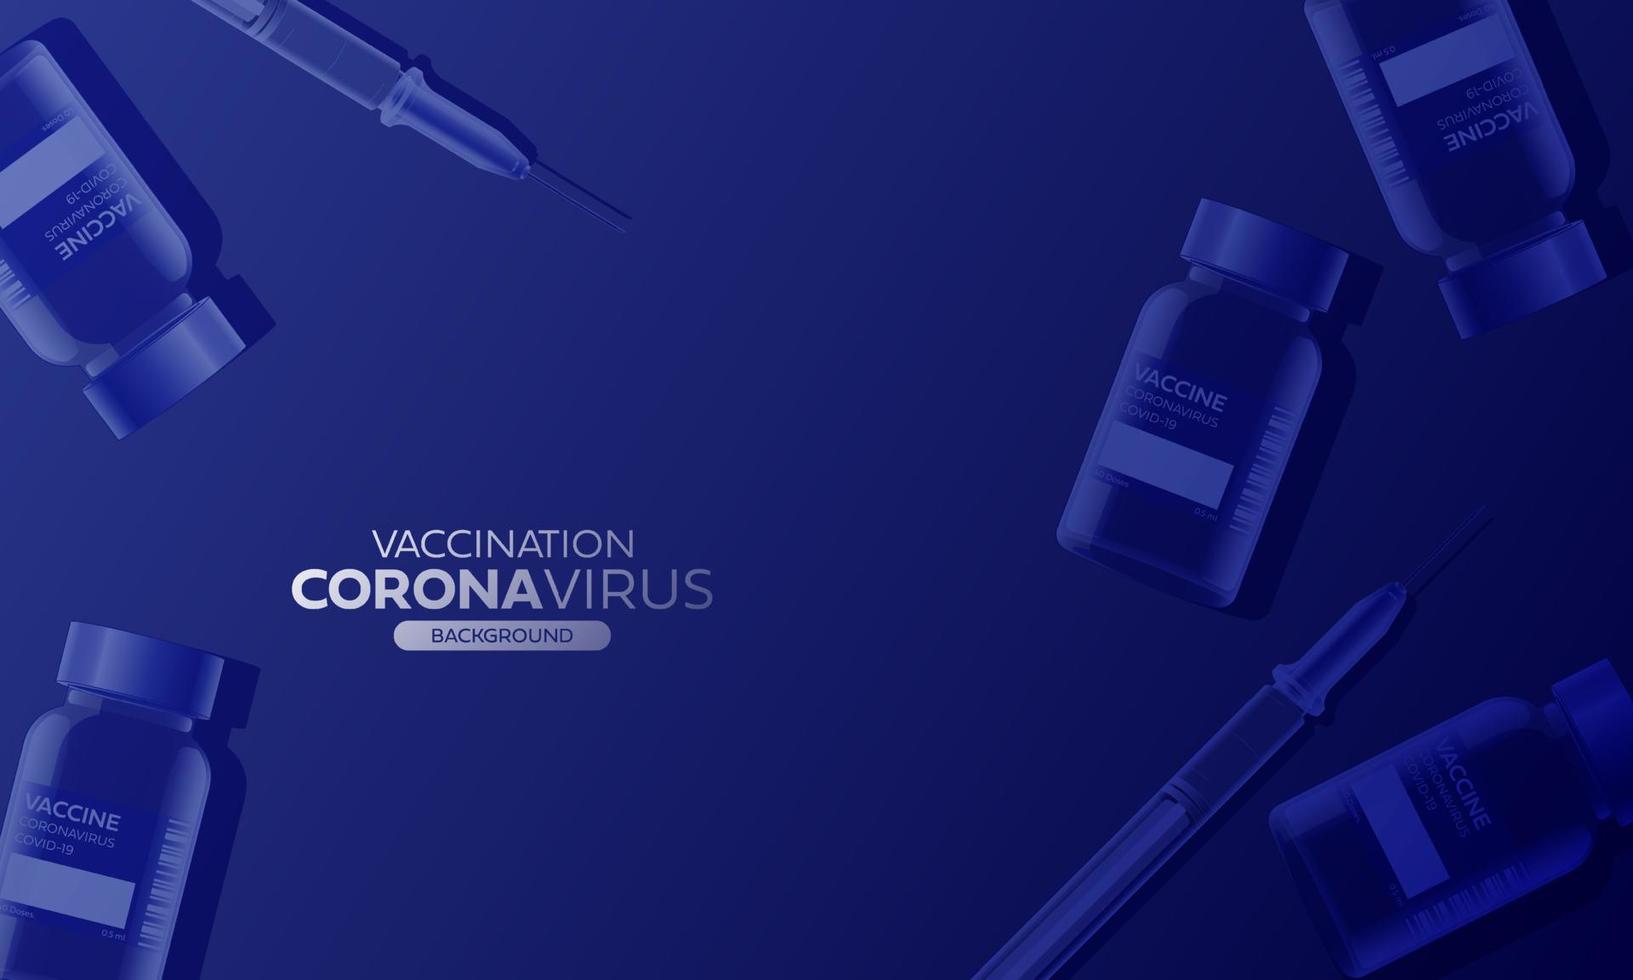 kreatives design für den hintergrund des coronavirus-impfbanners. Covid-19-Coronavirus-Impfung mit Impfflasche und Spritzeninjektionswerkzeug für die Covid19-Immunisierungsbehandlung. Vektor-Illustration. vektor